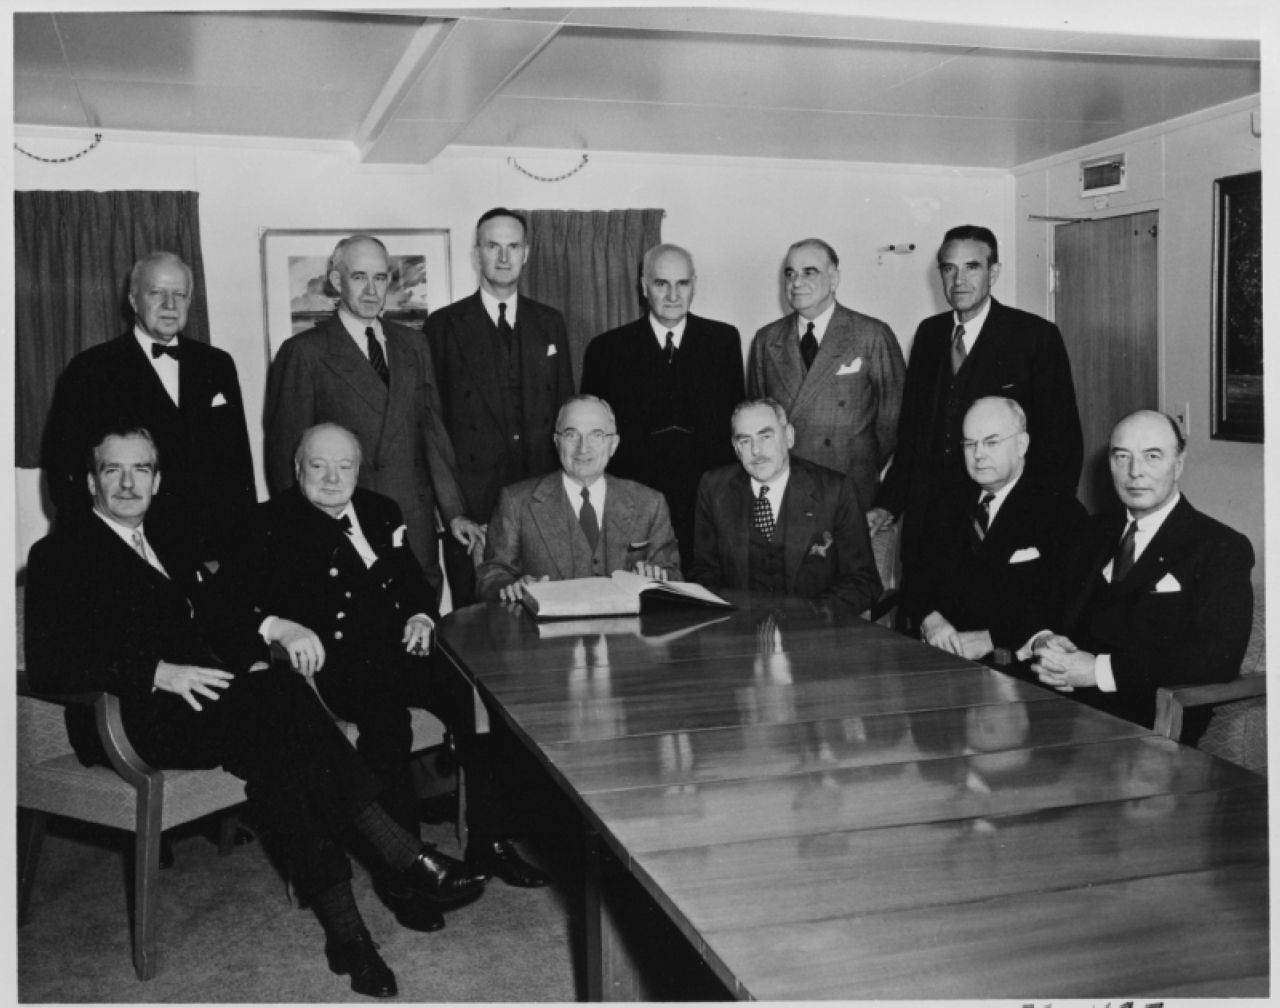 الصورة : 1947 وزير خارجية أمريكا جورج مارشال يعلن خطته لإعادة إعمار أوروبا بعد الحرب العالمية الثانية.